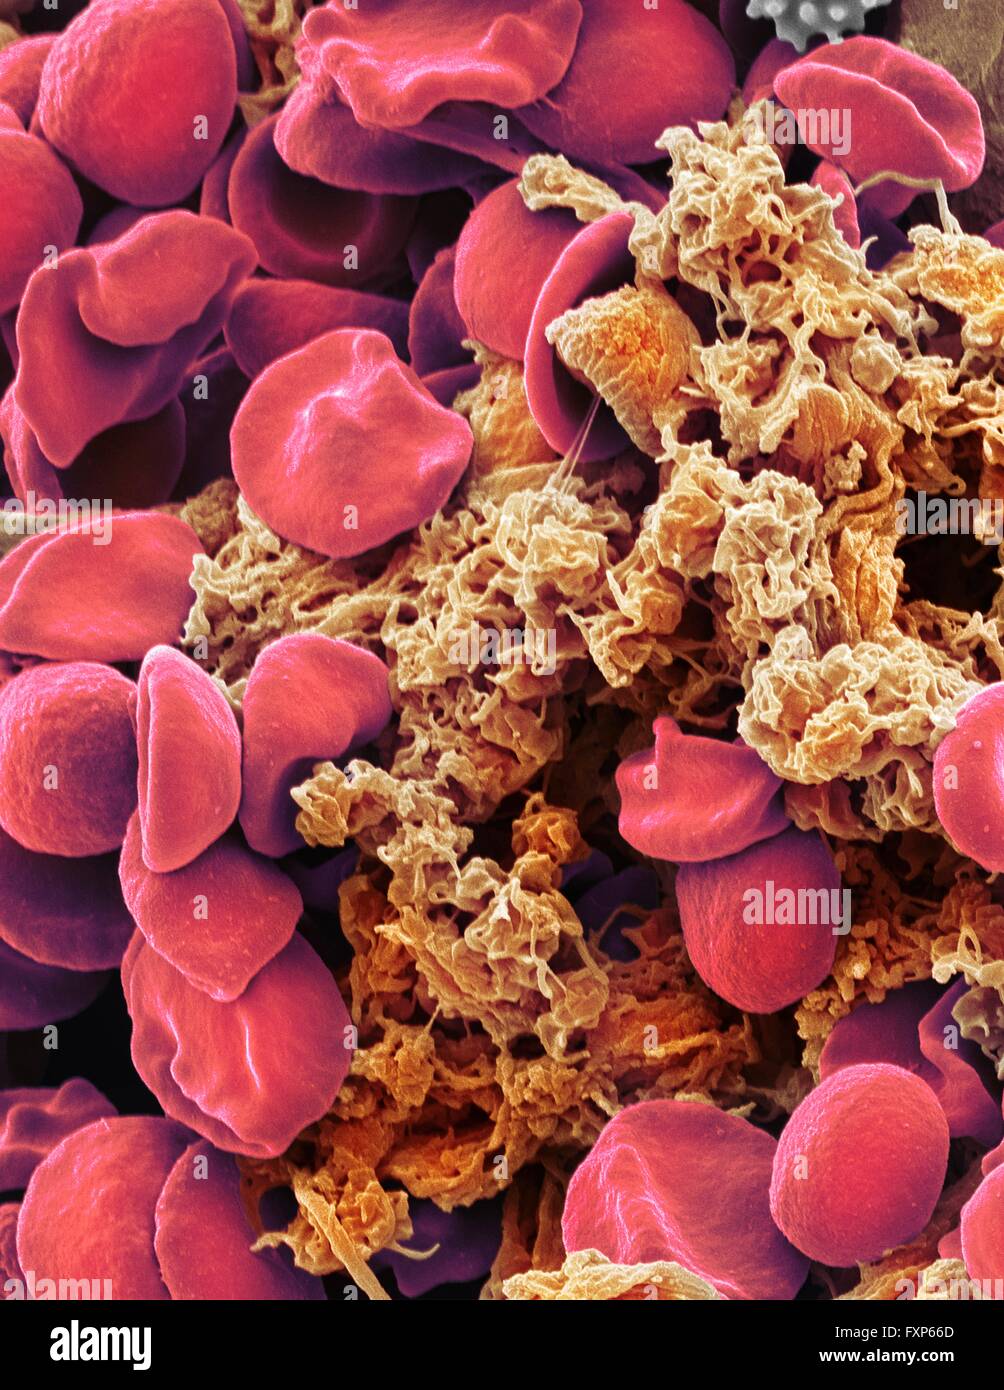 Roten Blutkörperchen und Blutplättchen. Farbige Scannen Electon Schliffbild (SEM) der menschlichen Erythrozyten (roten Blutkörperchen) und ein Plättchen-Aggregat (Orange). Thrombozyten sind Fragmente der weißen Blutkörperchen, die unter normalen Umständen klein und bikonkave Form sind. Jedoch ist eine Pause in der Oberfläche eines Blutgefäßes, die Moleküle der Thrombozyten Berührung sind nicht daran gewöhnt und werden aktiviert. Sie werden amorphe Form mit langen Fortsätzen (Pseudopodien), mit denen sie an anderen Zellen und andere, halten ein Gerinnsel bilden. Vergrößerung: X3000 wenn bei 10 Zentimeter gedruckt Stockfoto